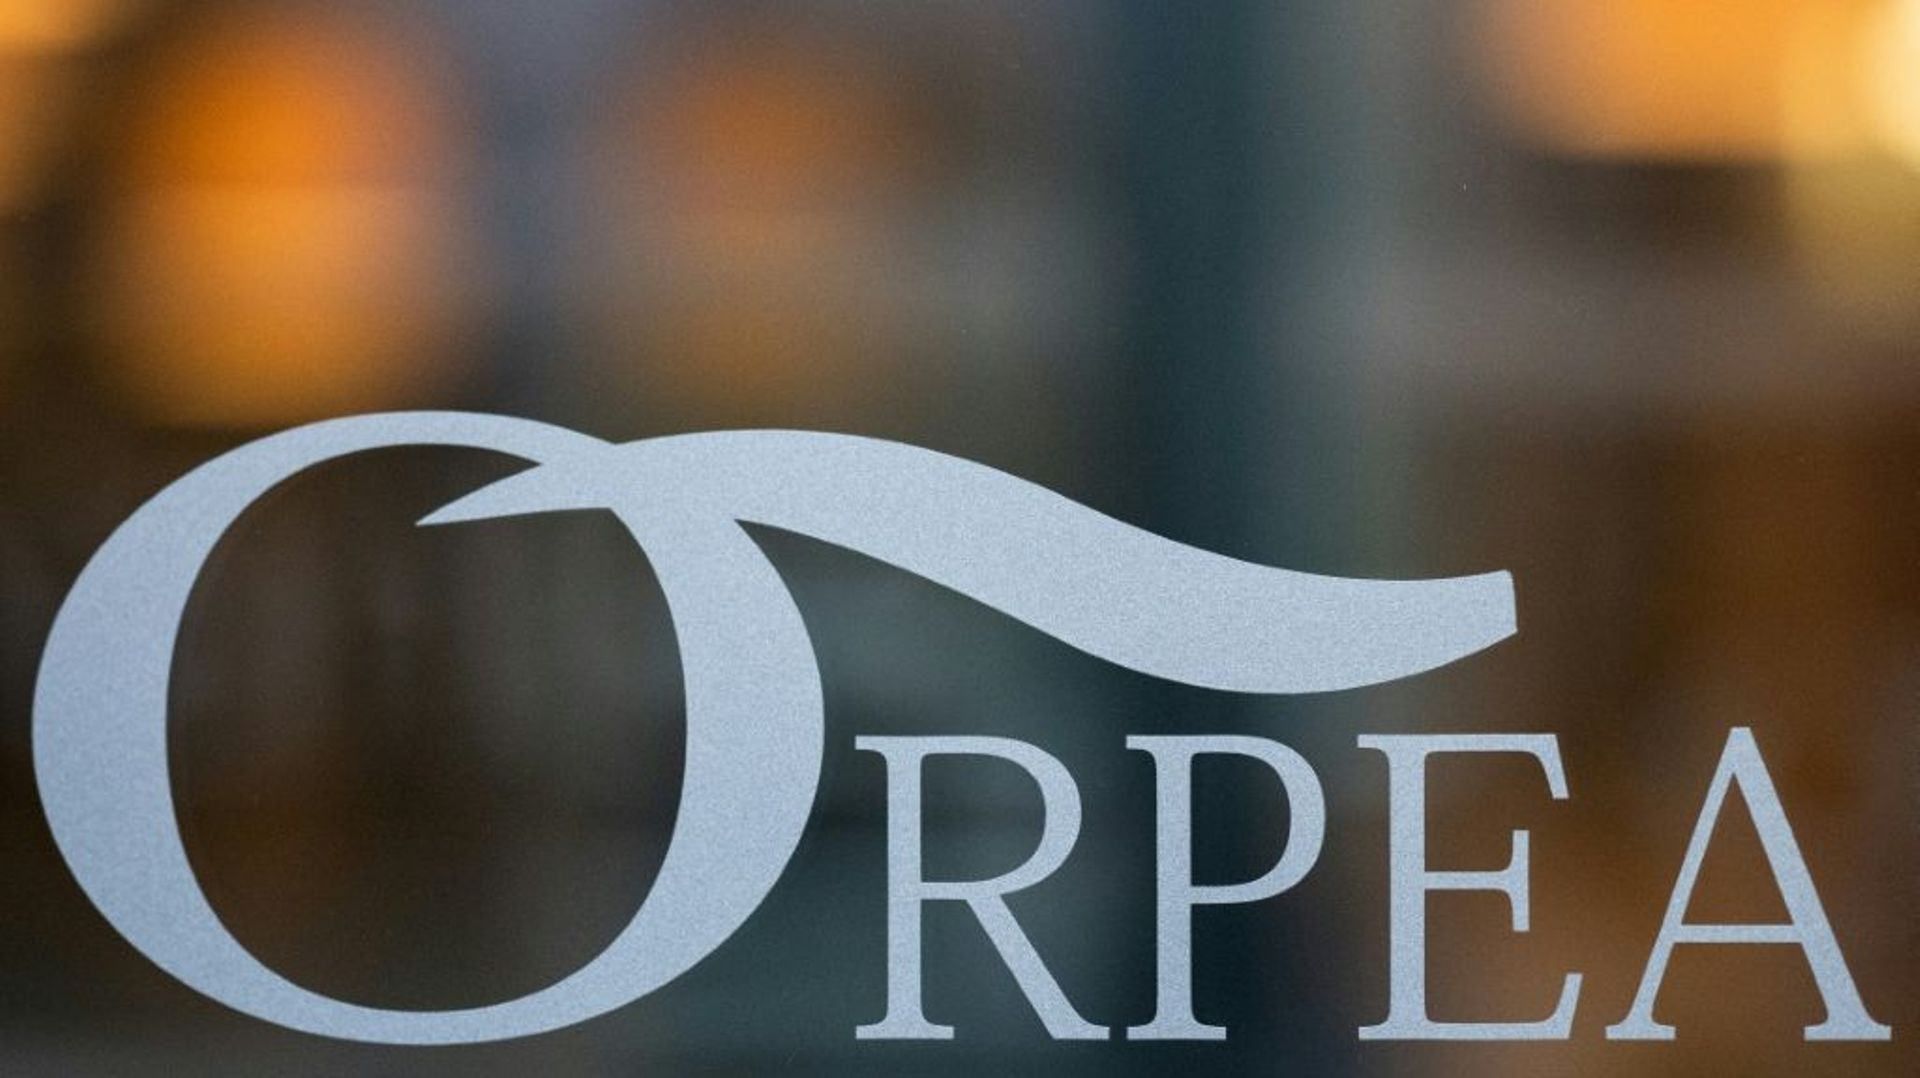 Le groupe privé de maisons de retraite Orpea, accusé d’avoir détourné des fonds publics, a été sommé de rembourser 55,8 millions d’euros à l’État